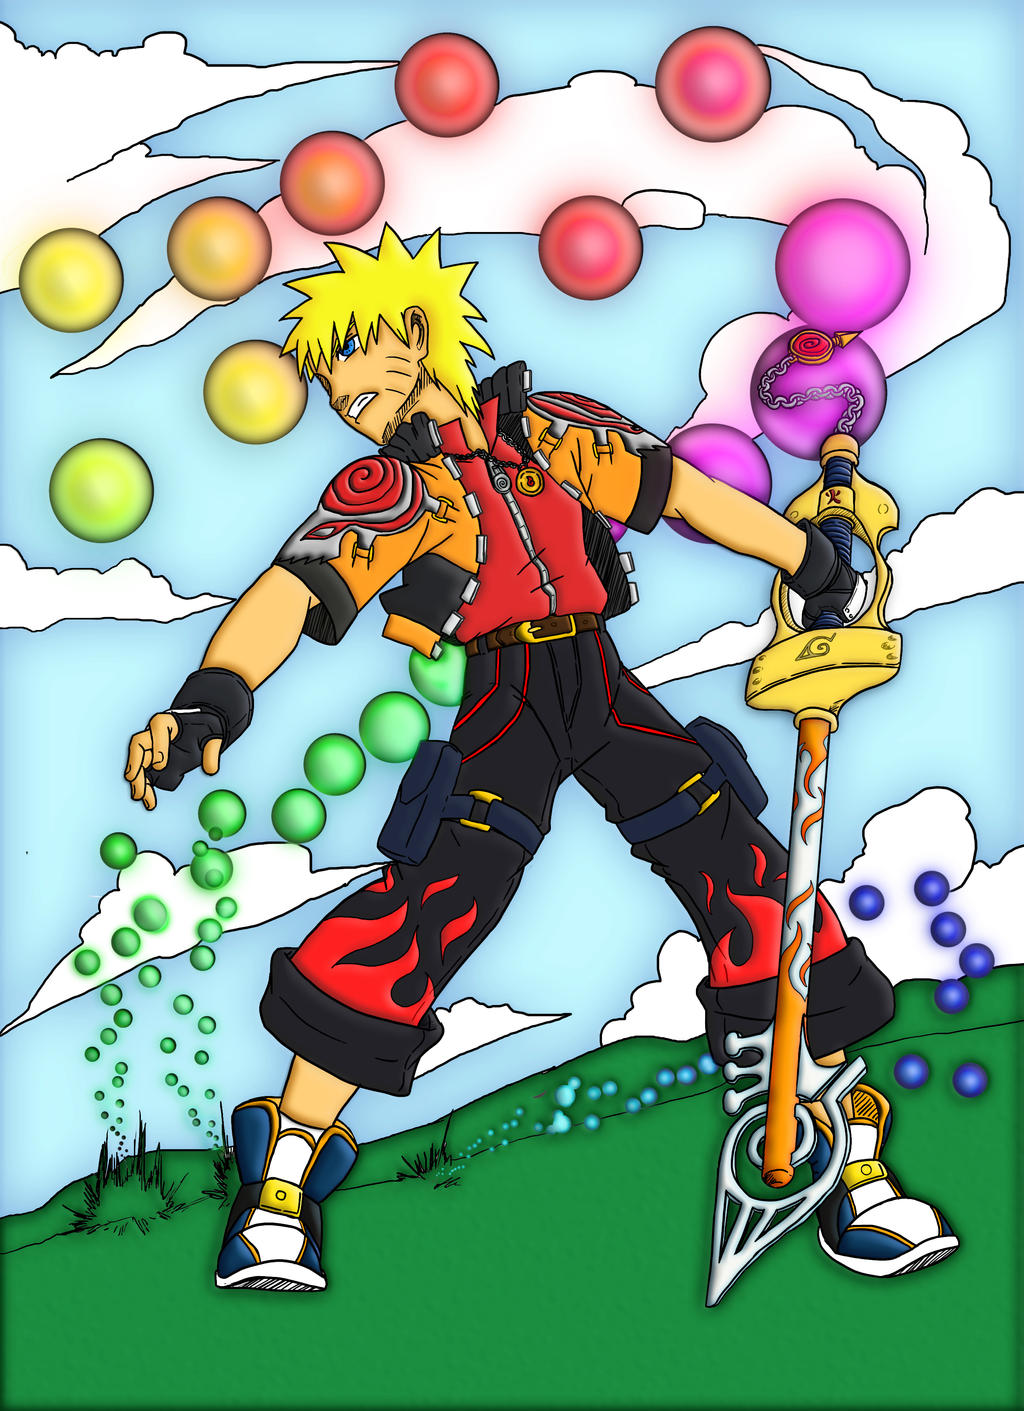 Naruto x Sora from Kingdom Hearts Fusion by OllyOddfarm on DeviantArt